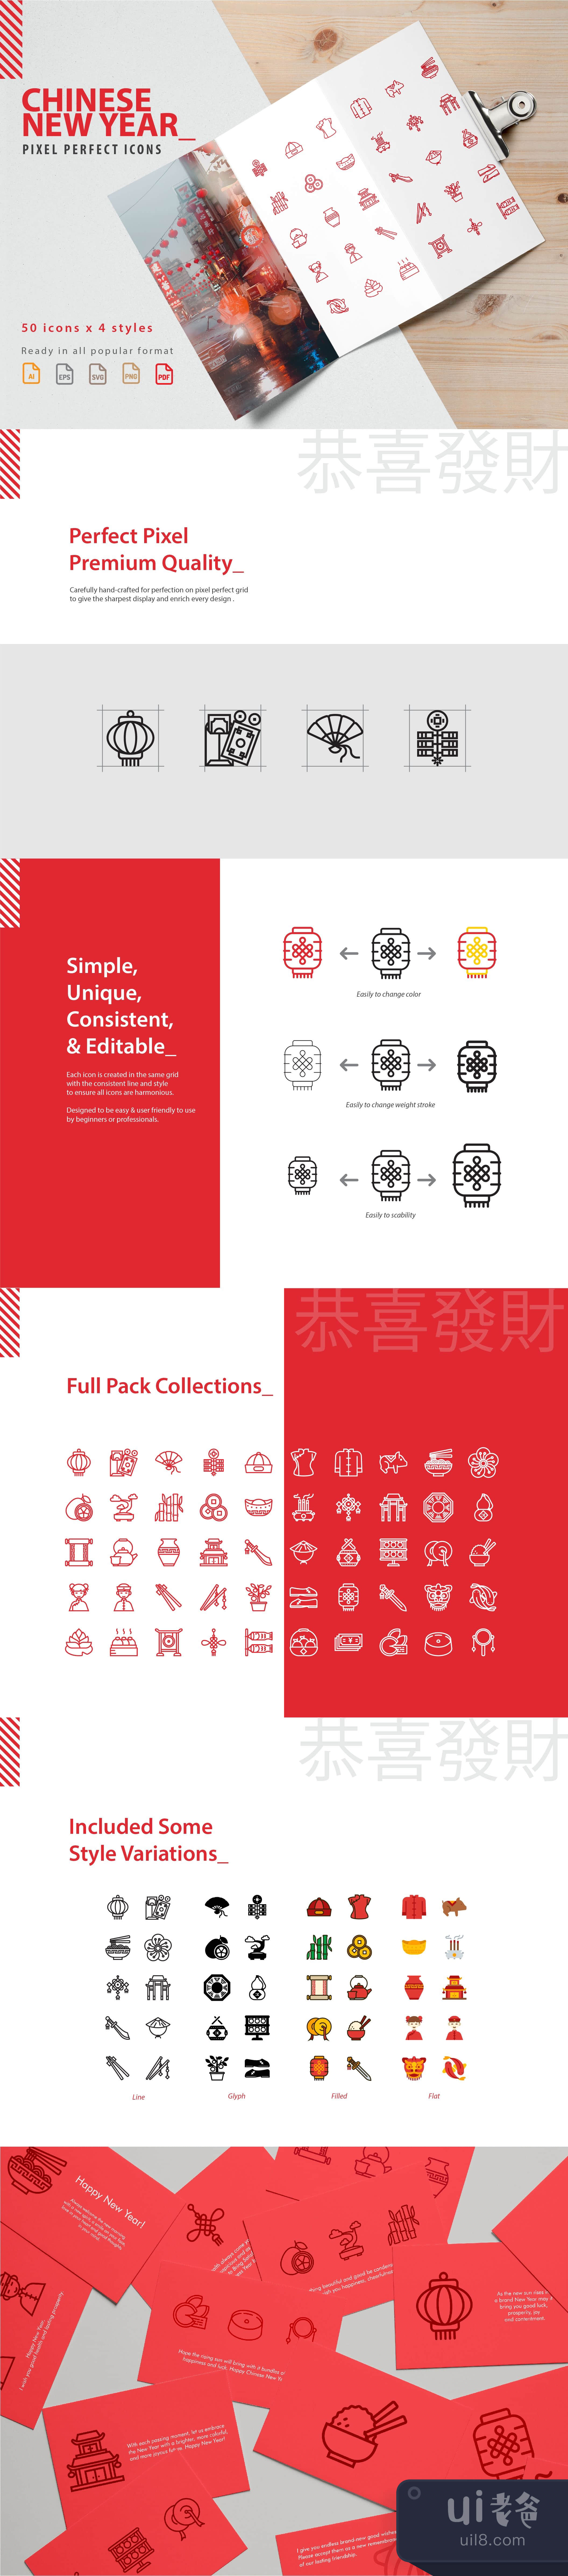 中国新年图标集 (Chinese New Year Icons Set)插图1